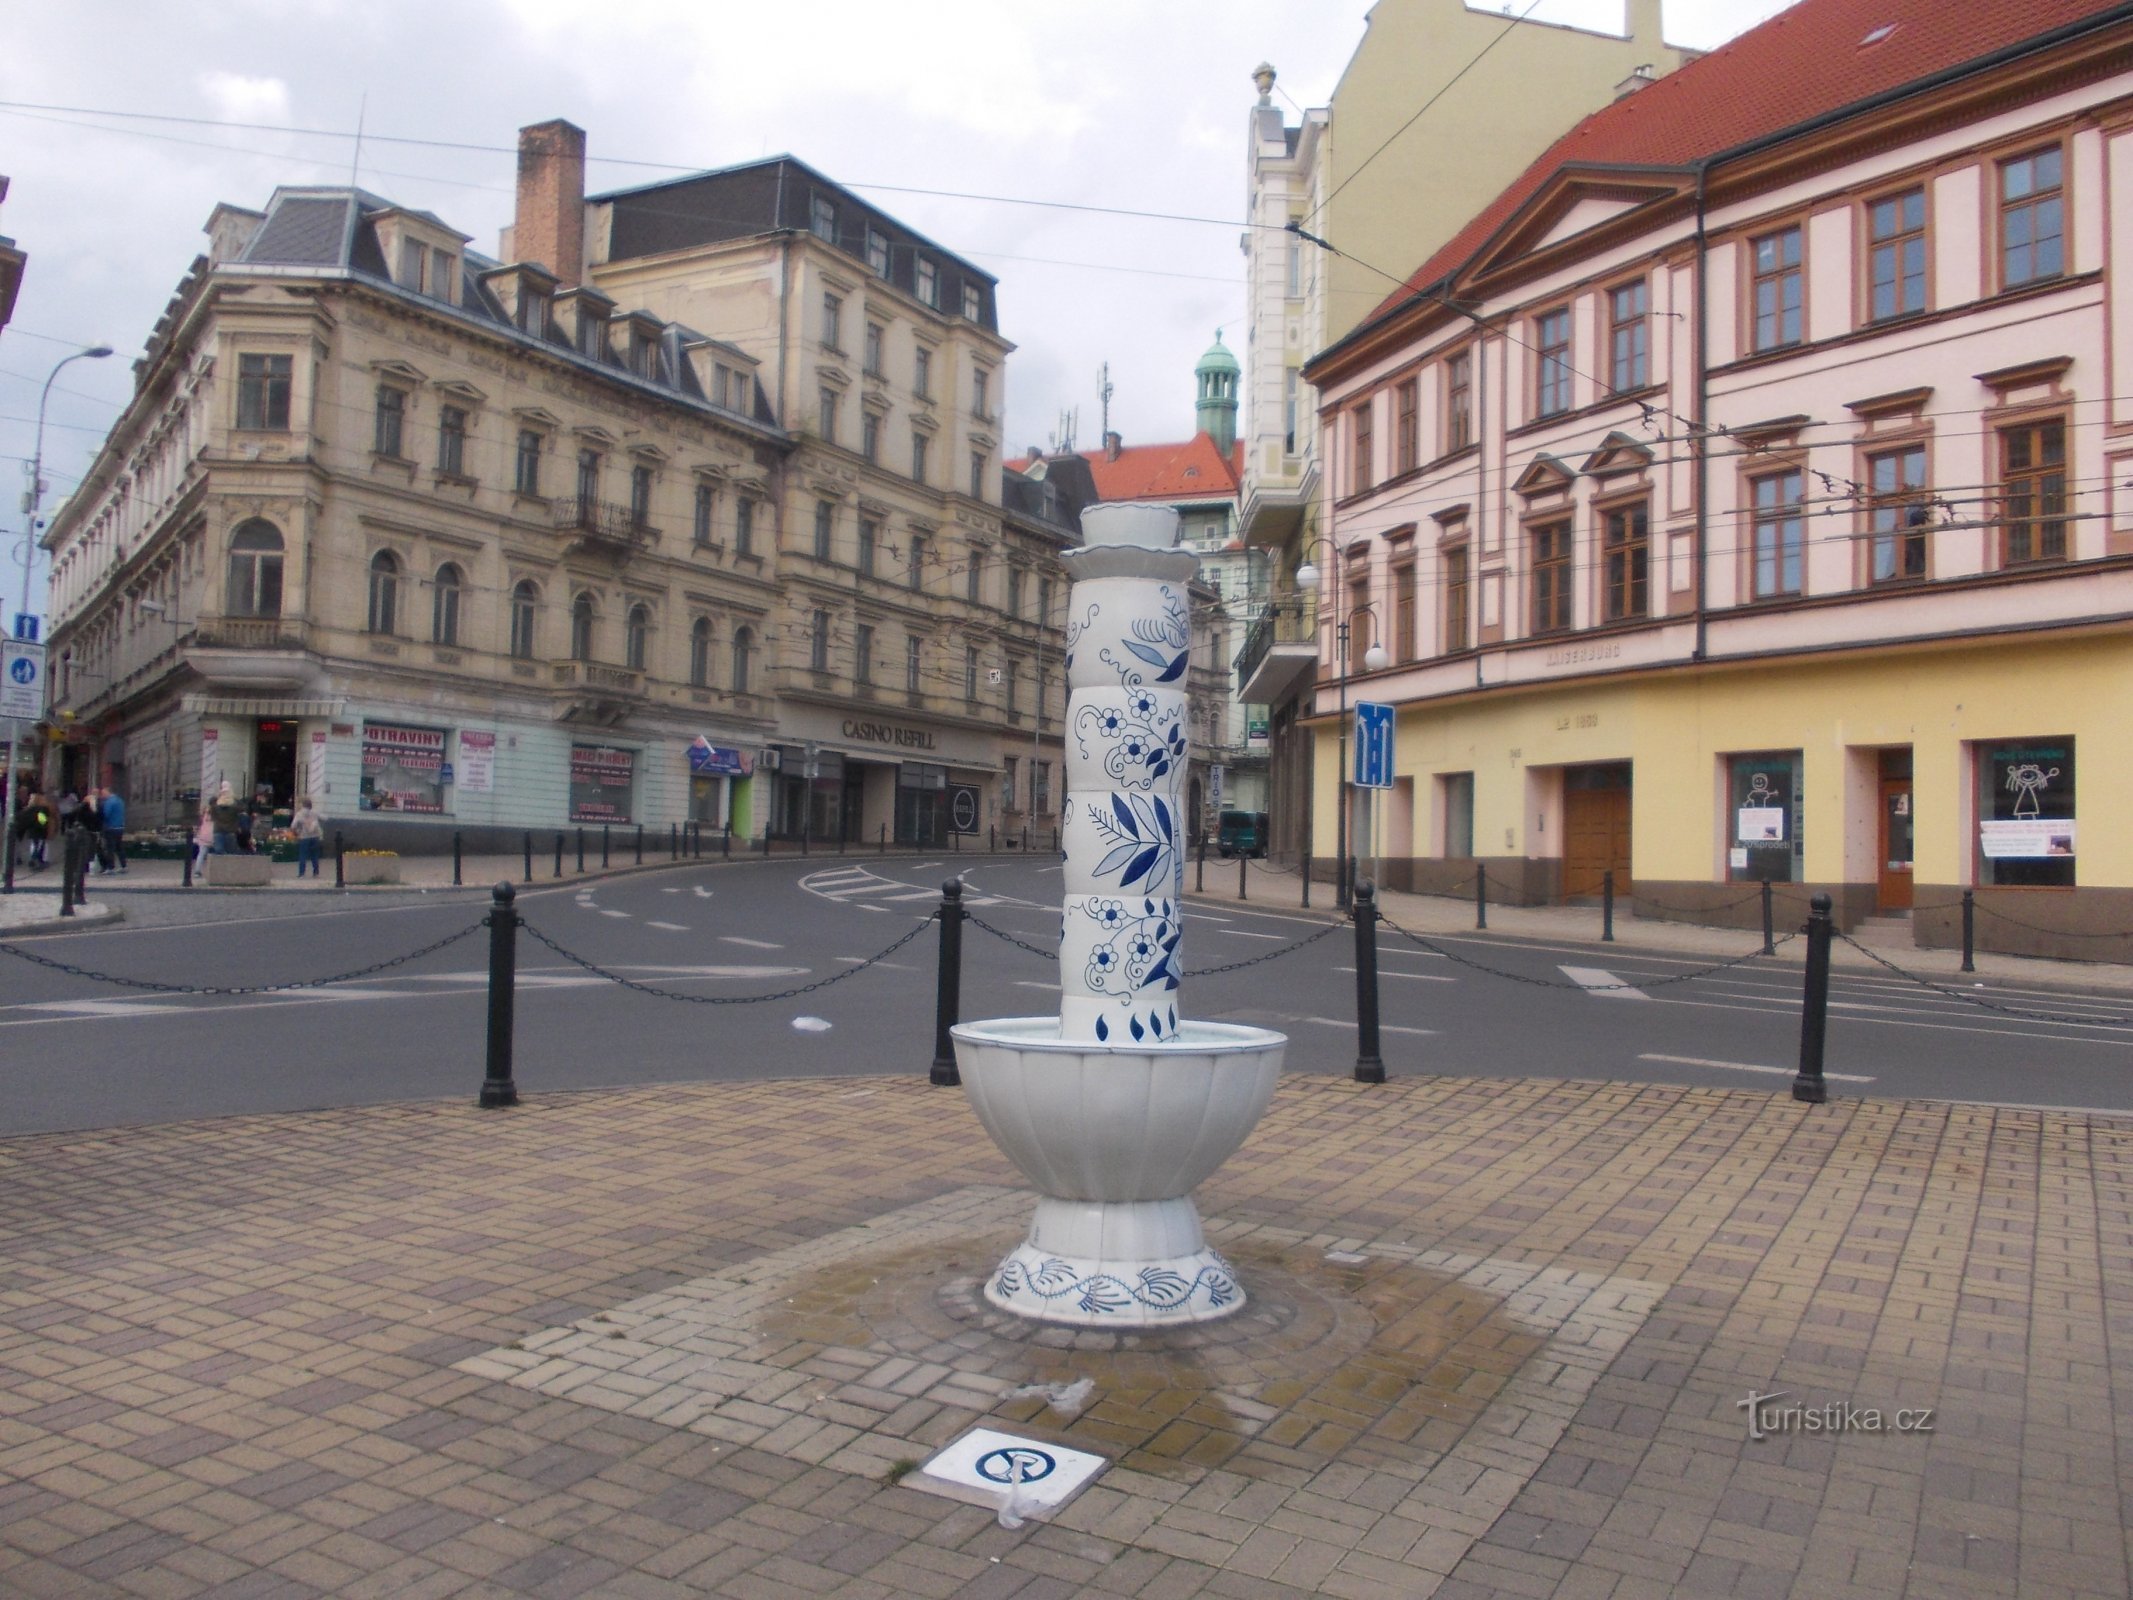 the fountain at the intersection of U Císařských lázní and U divádla streets